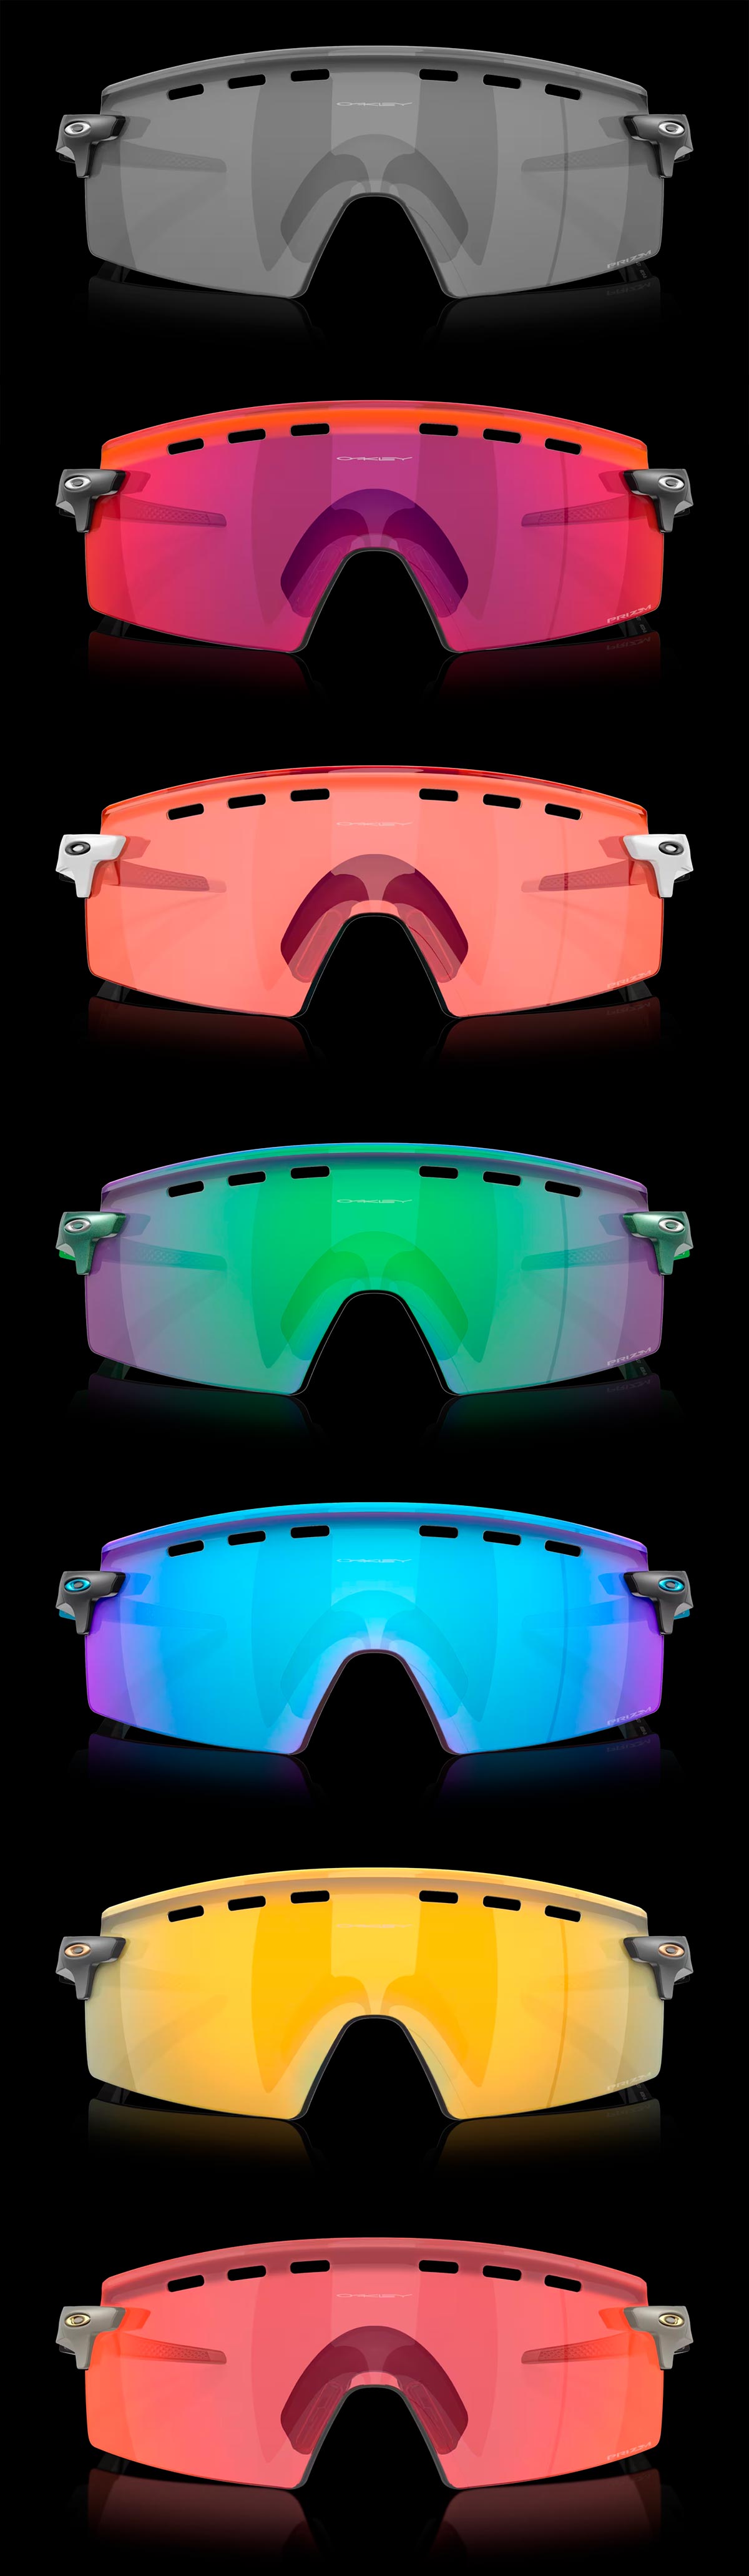 Oakley presenta las Encoder Strike, unas gafas envolventes y perfectamente ventiladas para ciclistas